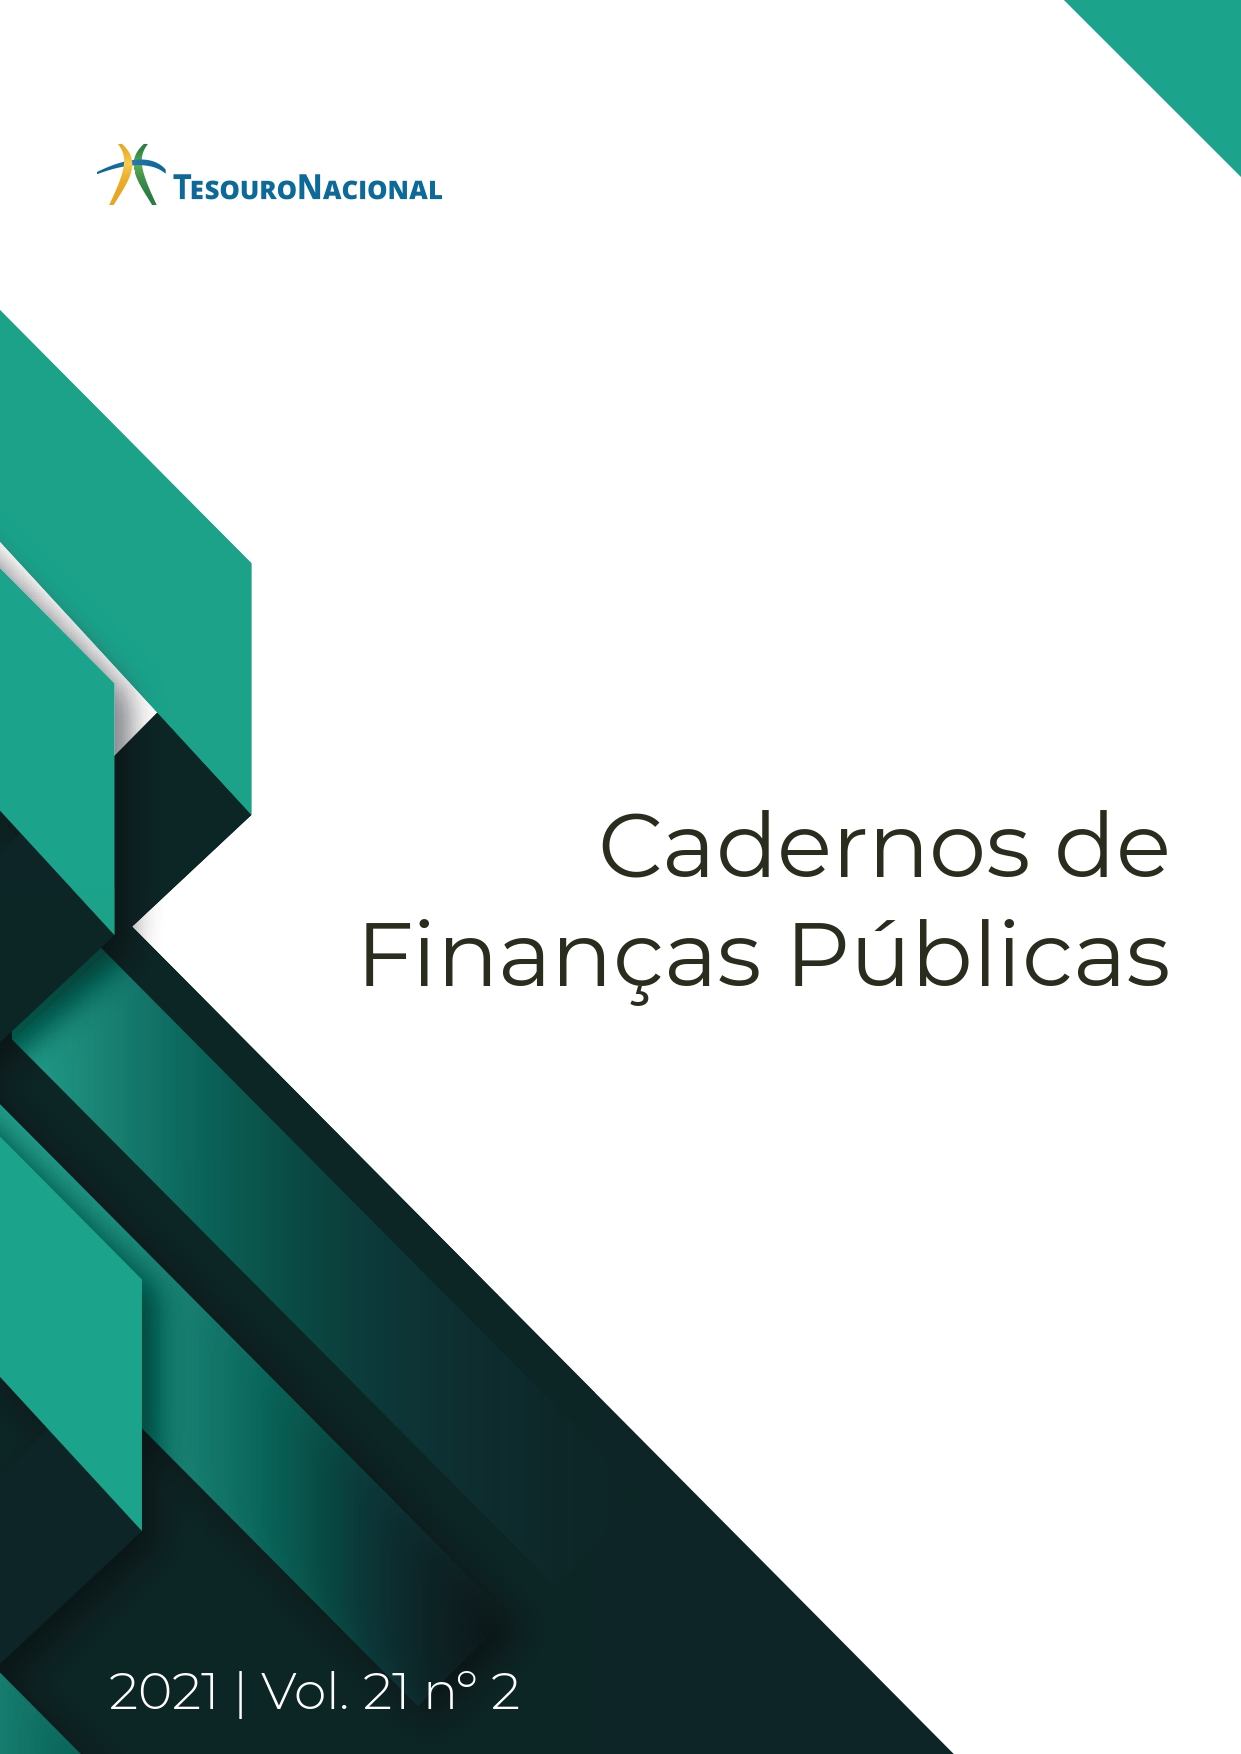 					Visualizar v. 21 n. 02 (2021): CADERNOS DE FINANÇAS PÚBLICAS
				